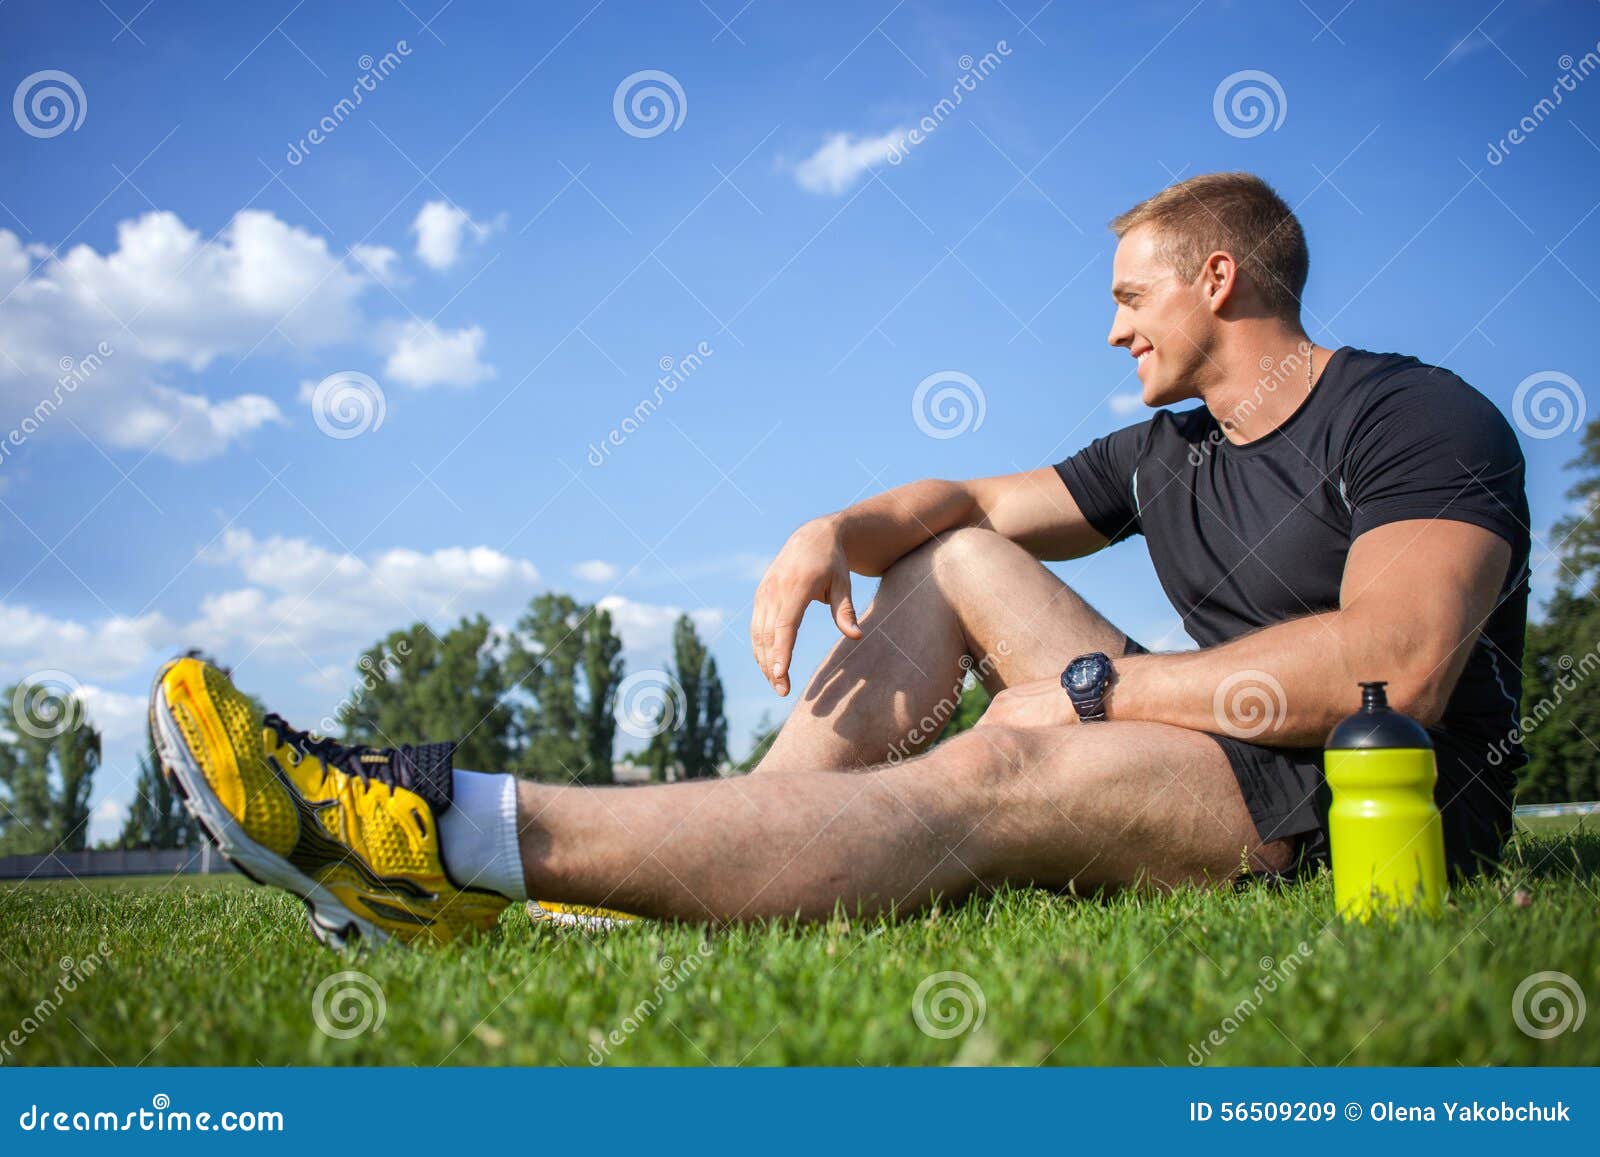 Вода после бега. Спортсмен отдыхает. Спортсмен пьет воду. Отдых спортсмена. Отдыхают после пробежки.